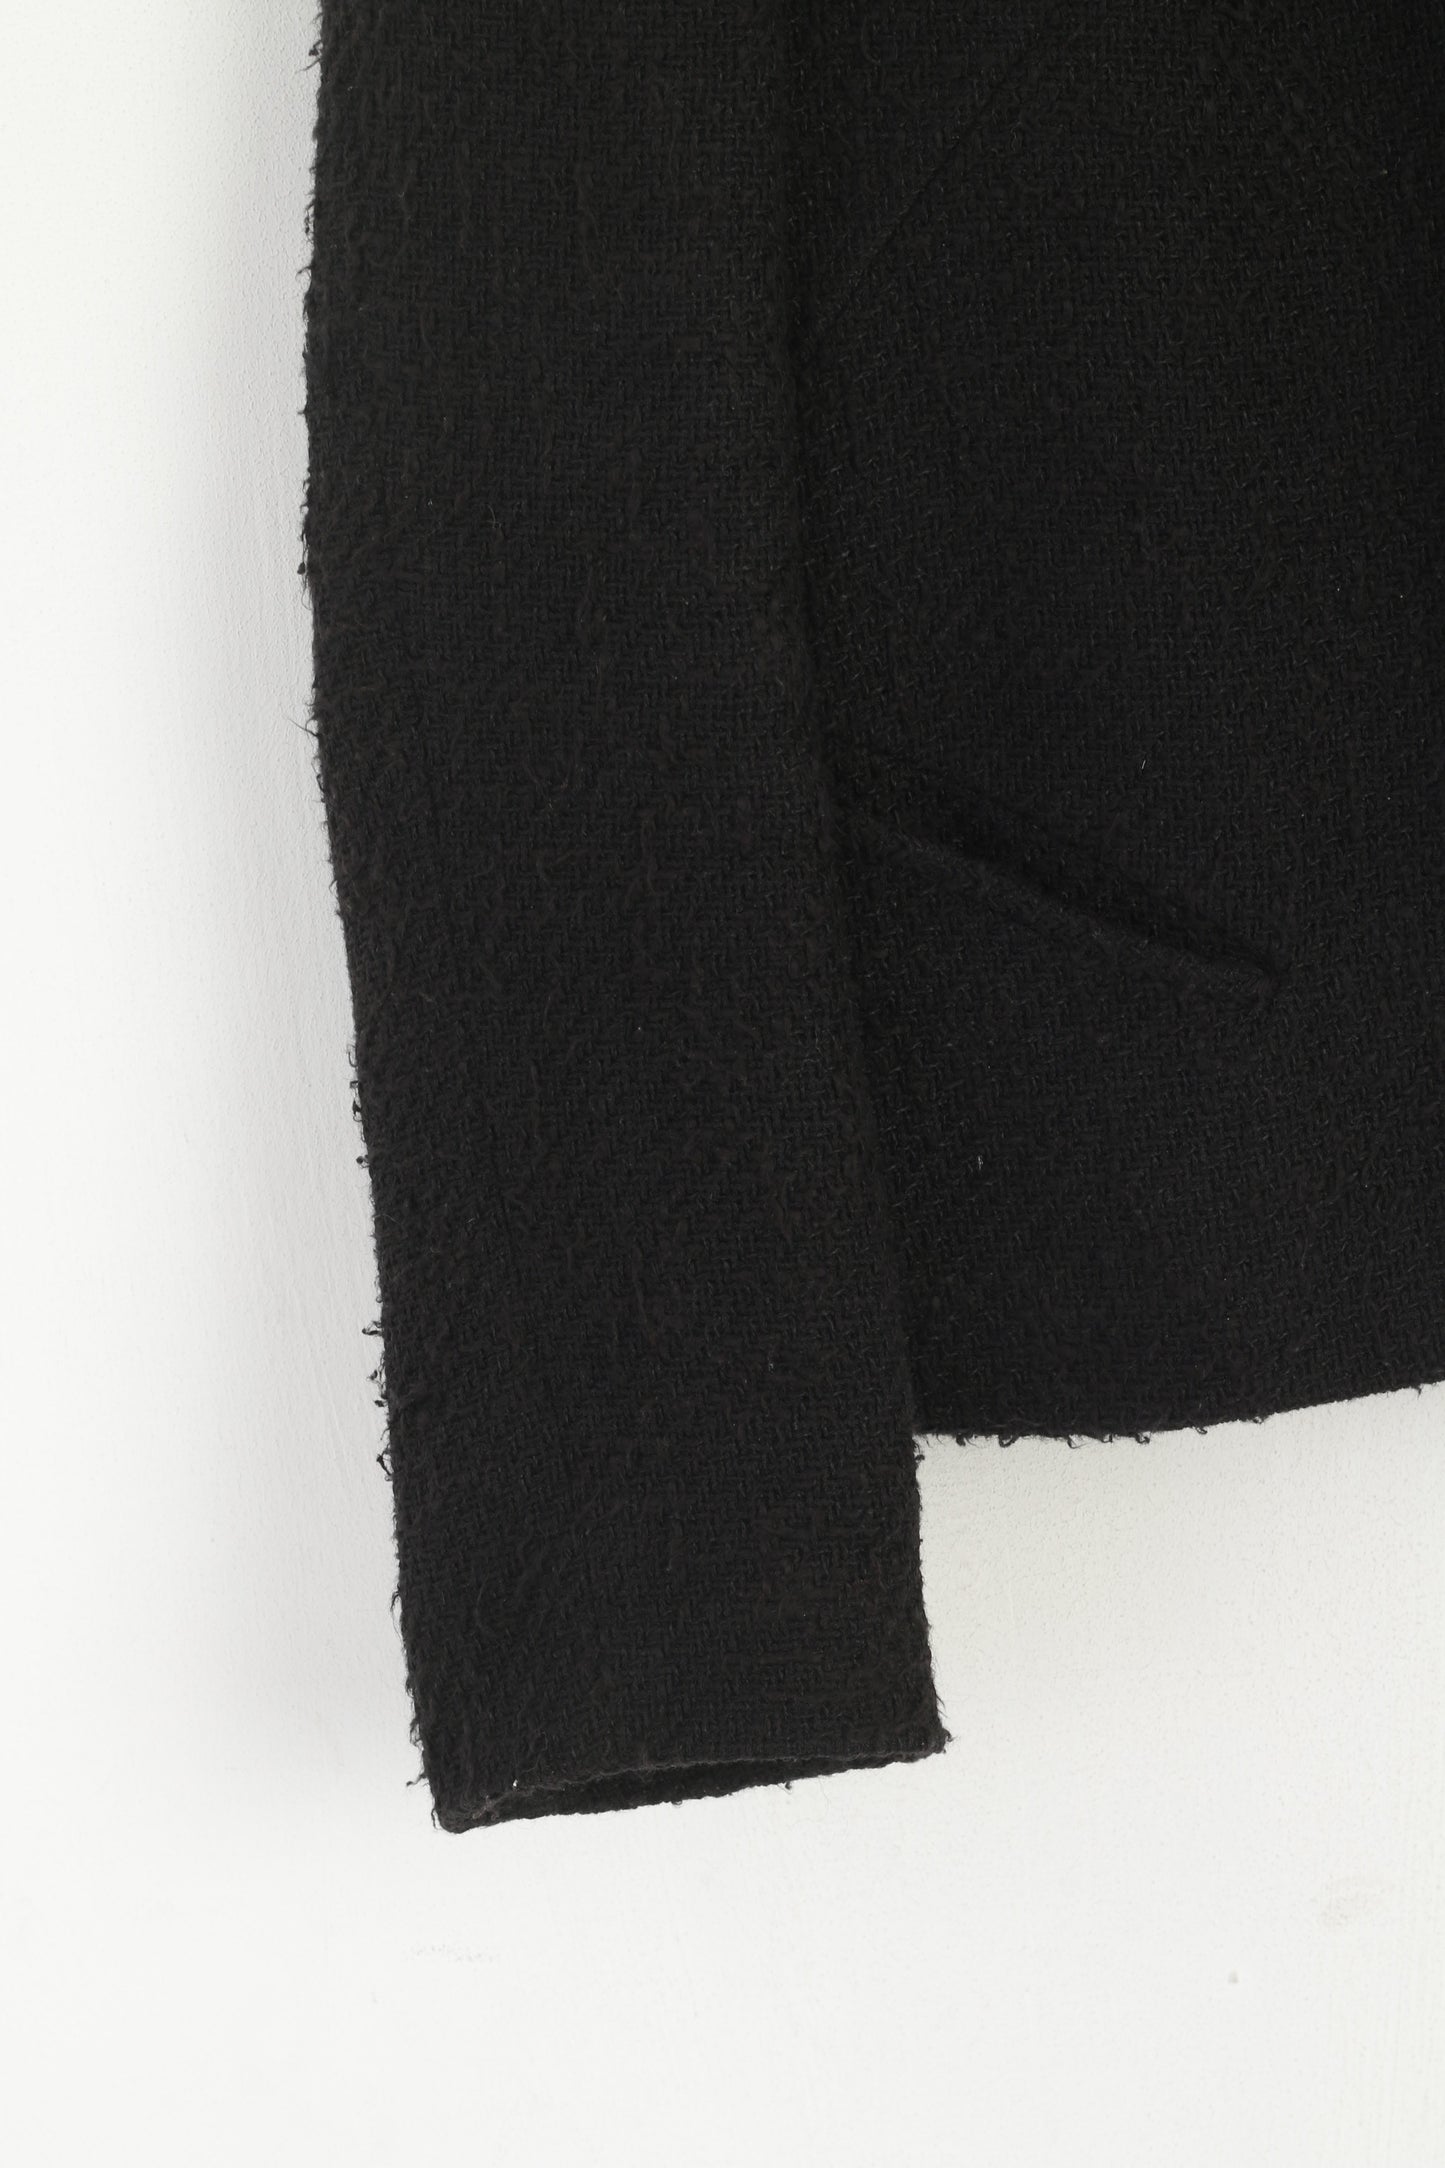 Bazar Christian Lacroix Women M Blazer Black Cotton Shoulder Pads France Jacket